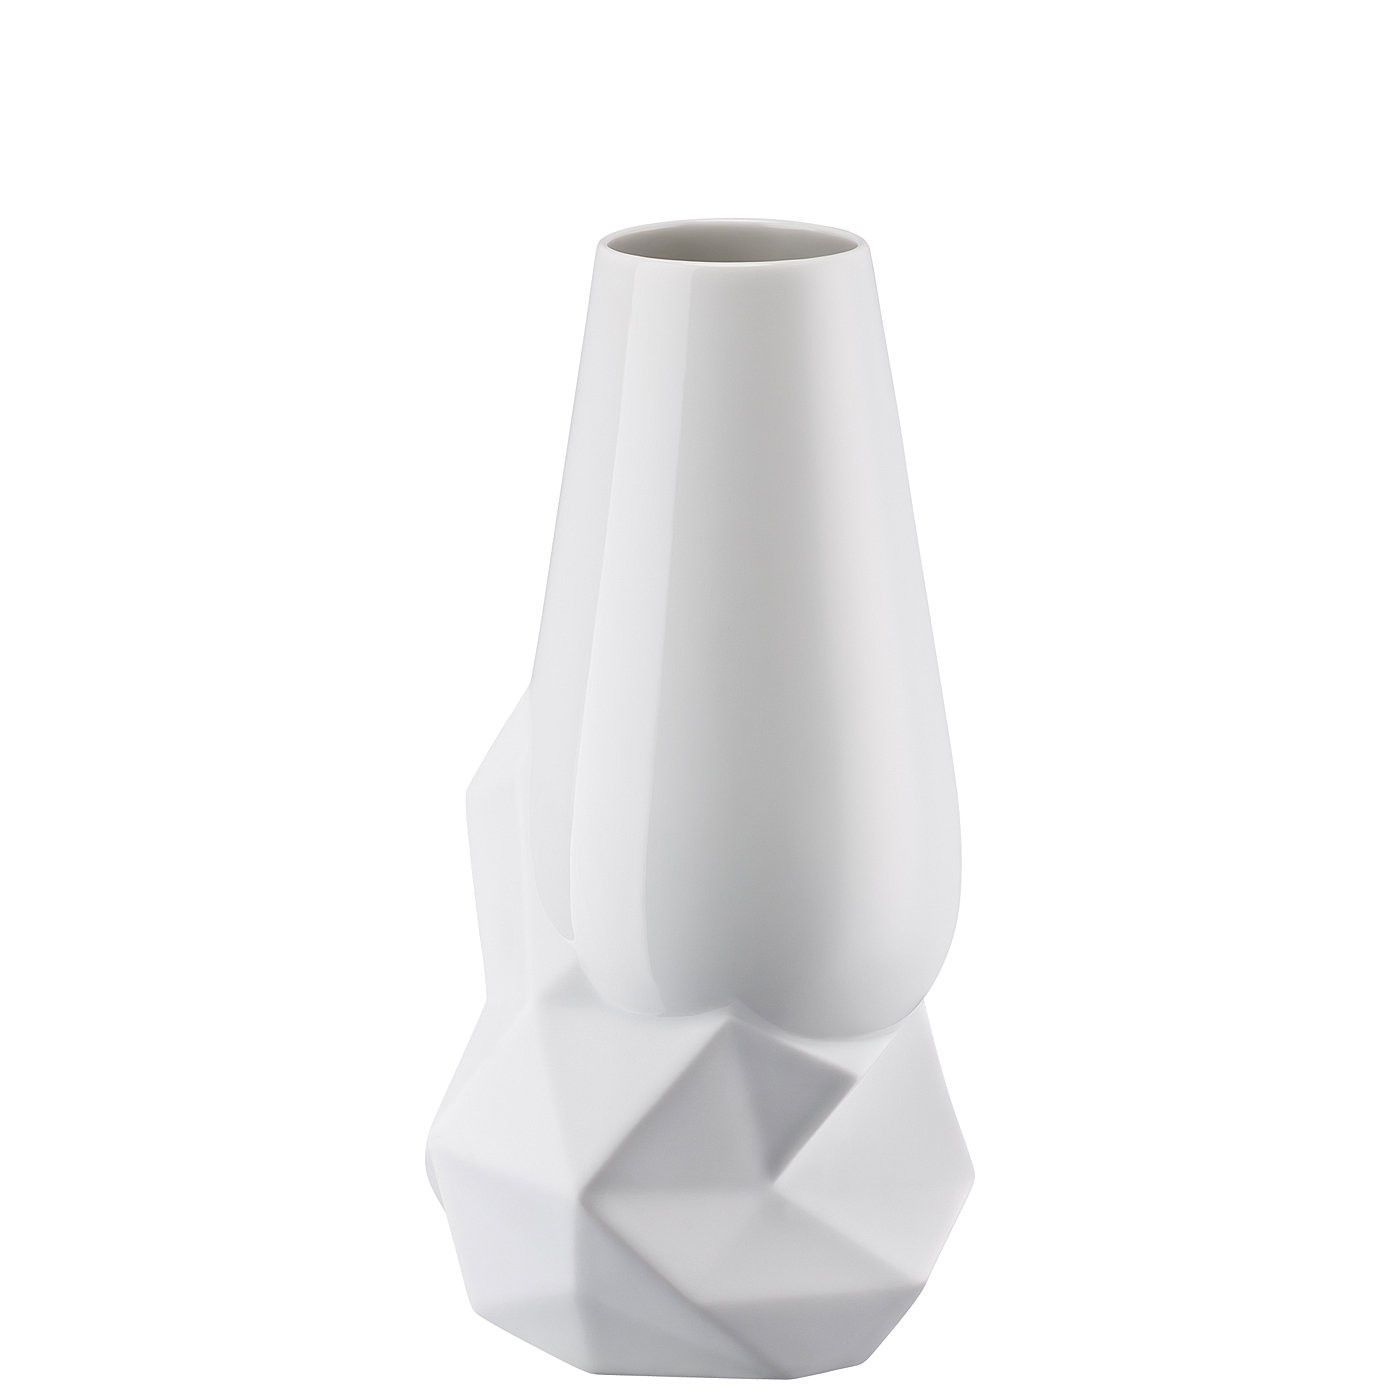 24 Popular Rosenthal Vases for Sale 2024 free download rosenthal vases for sale of geode white vase 27 cm rosenthal porcelain online shop with regard to geode weiac29f vase 27 cm